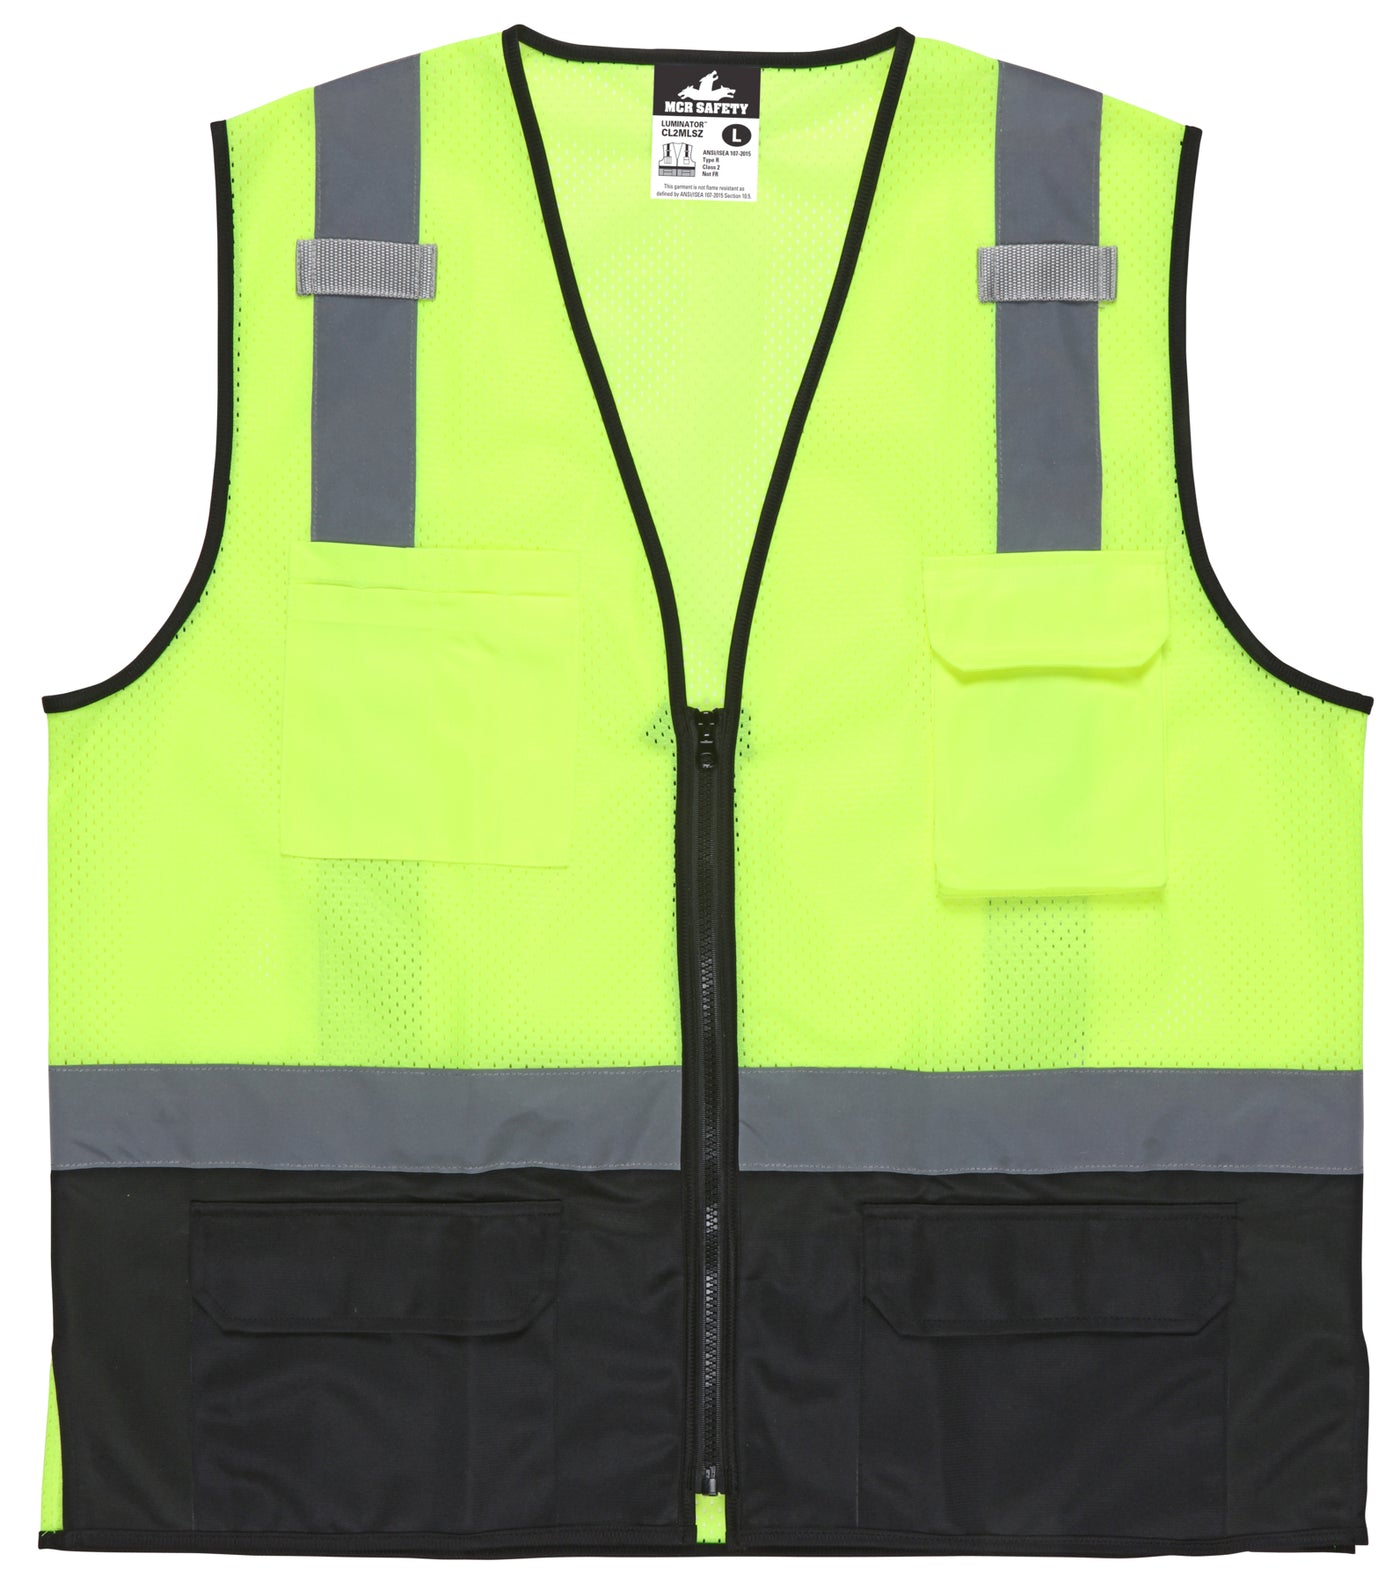 CL2MLSZ - Safety Vest, ANSI Class II